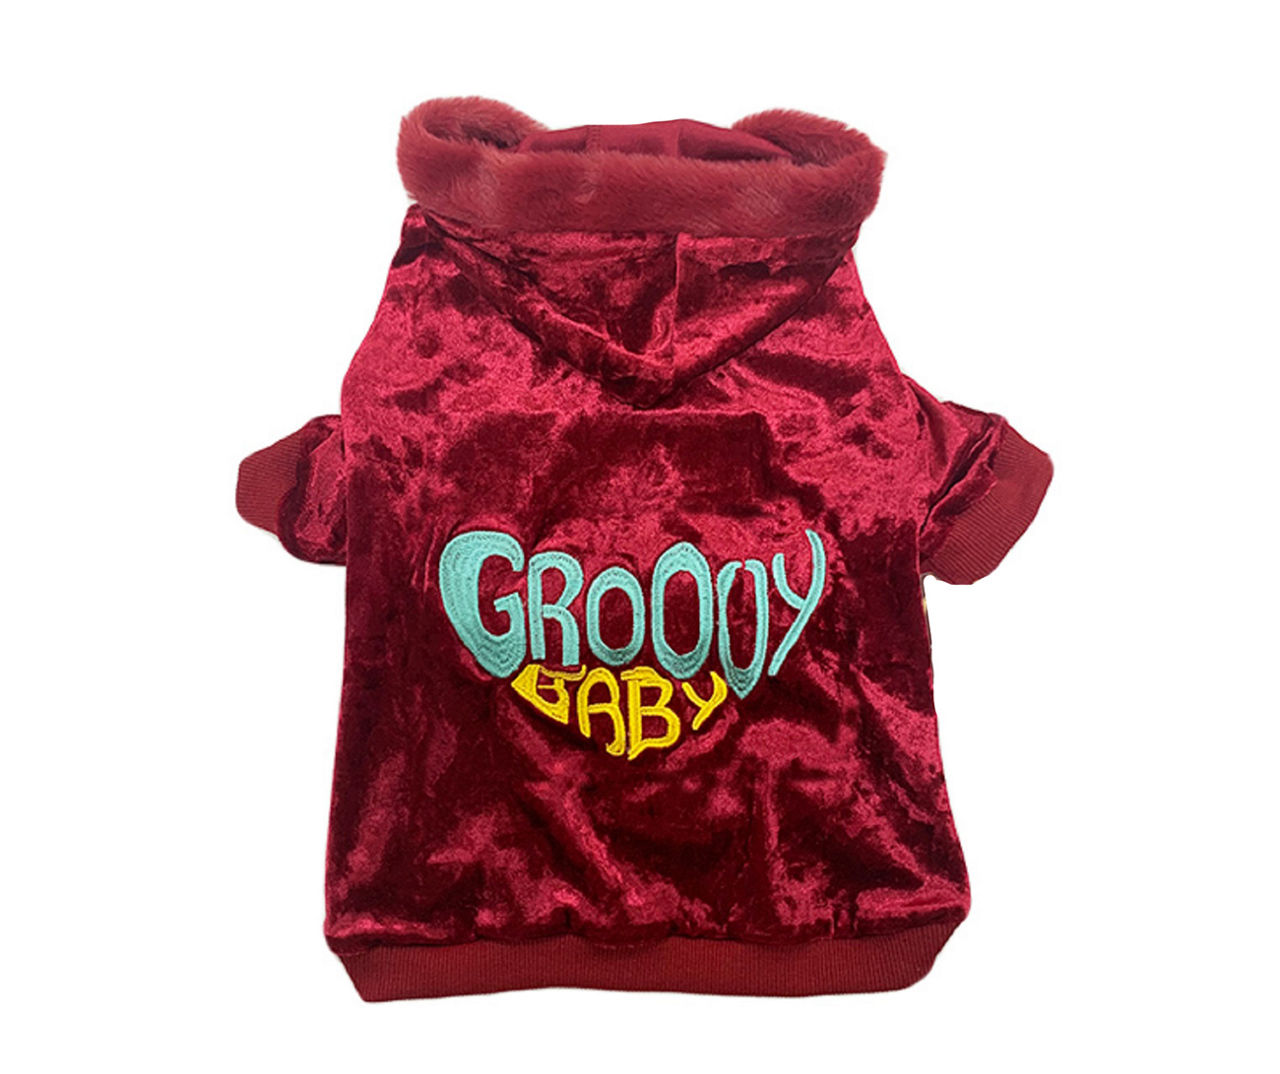 Pet Small "Groovy Baby" Red Velvet Hoodie